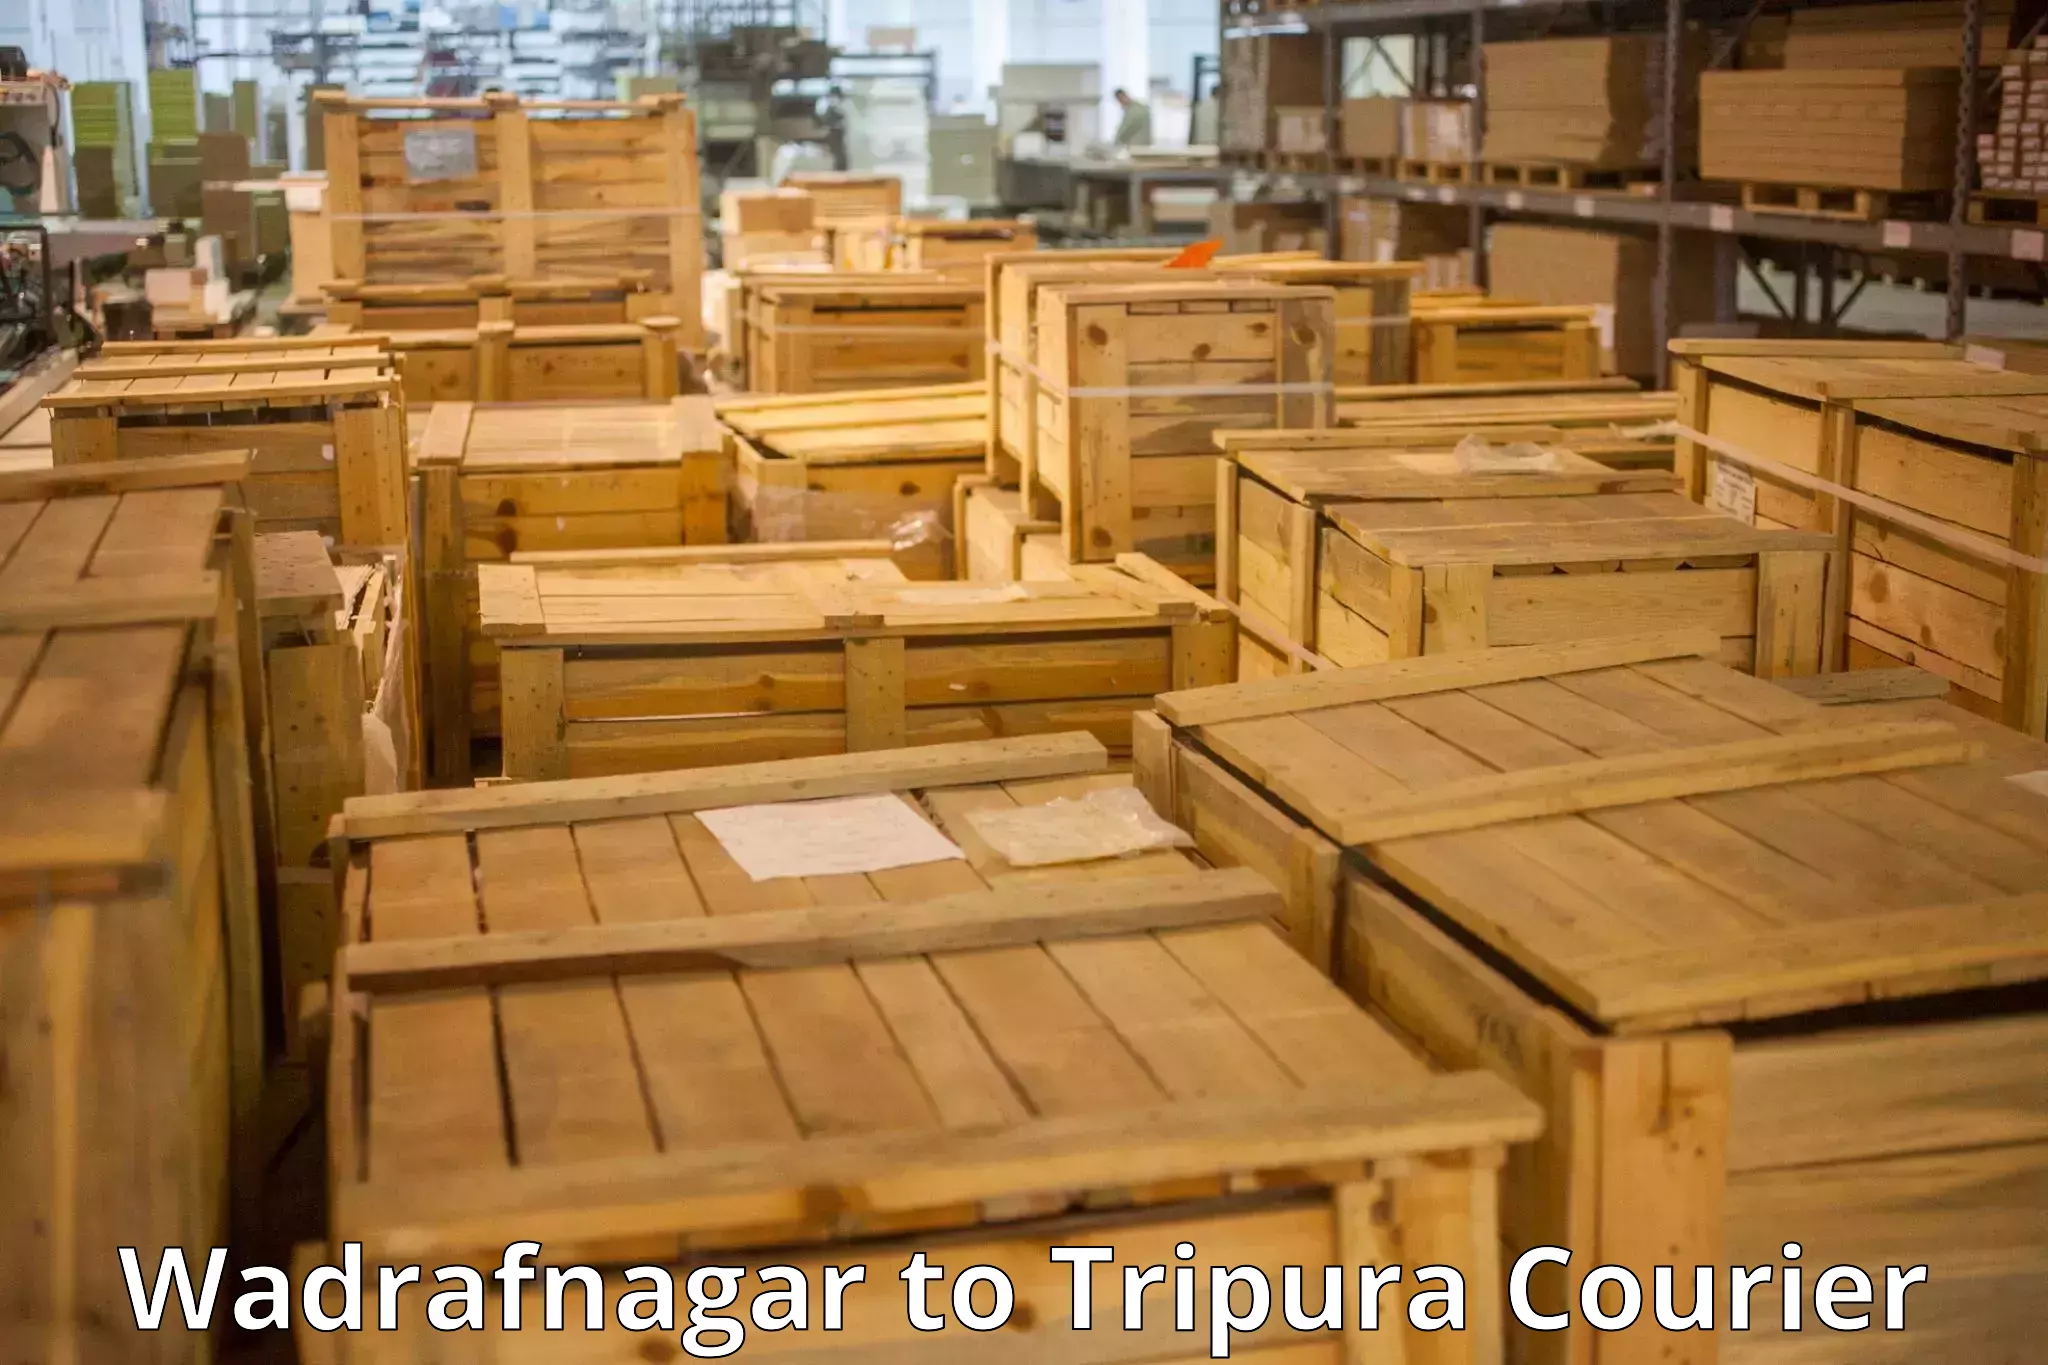 Luggage delivery optimization in Wadrafnagar to IIIT Agartala